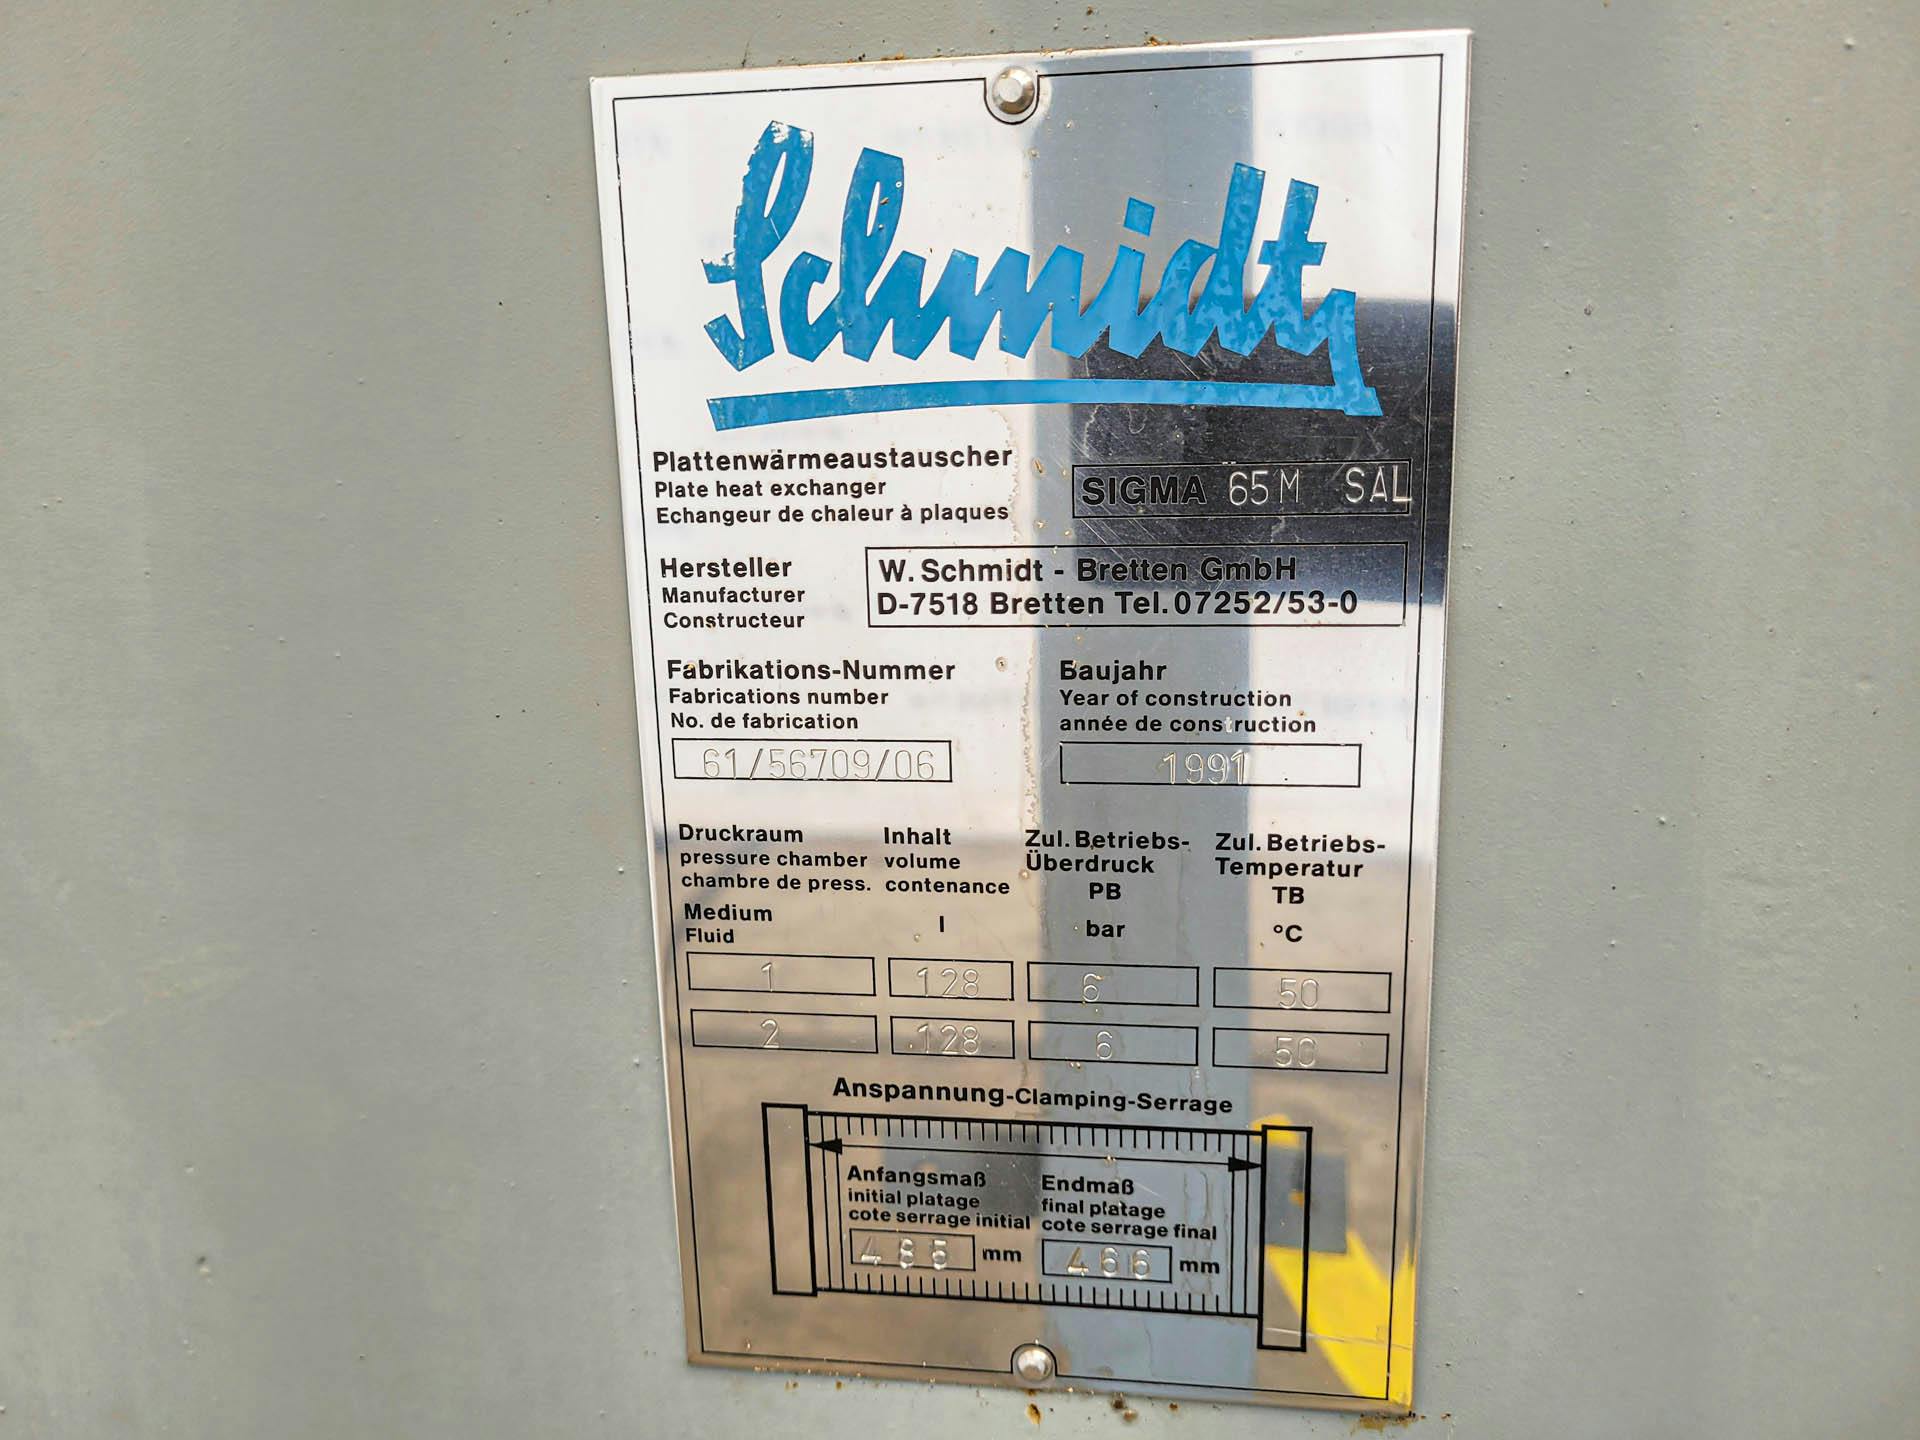 Schmidt Sigma 65M SAL - Plattenwärmetauscher - image 5